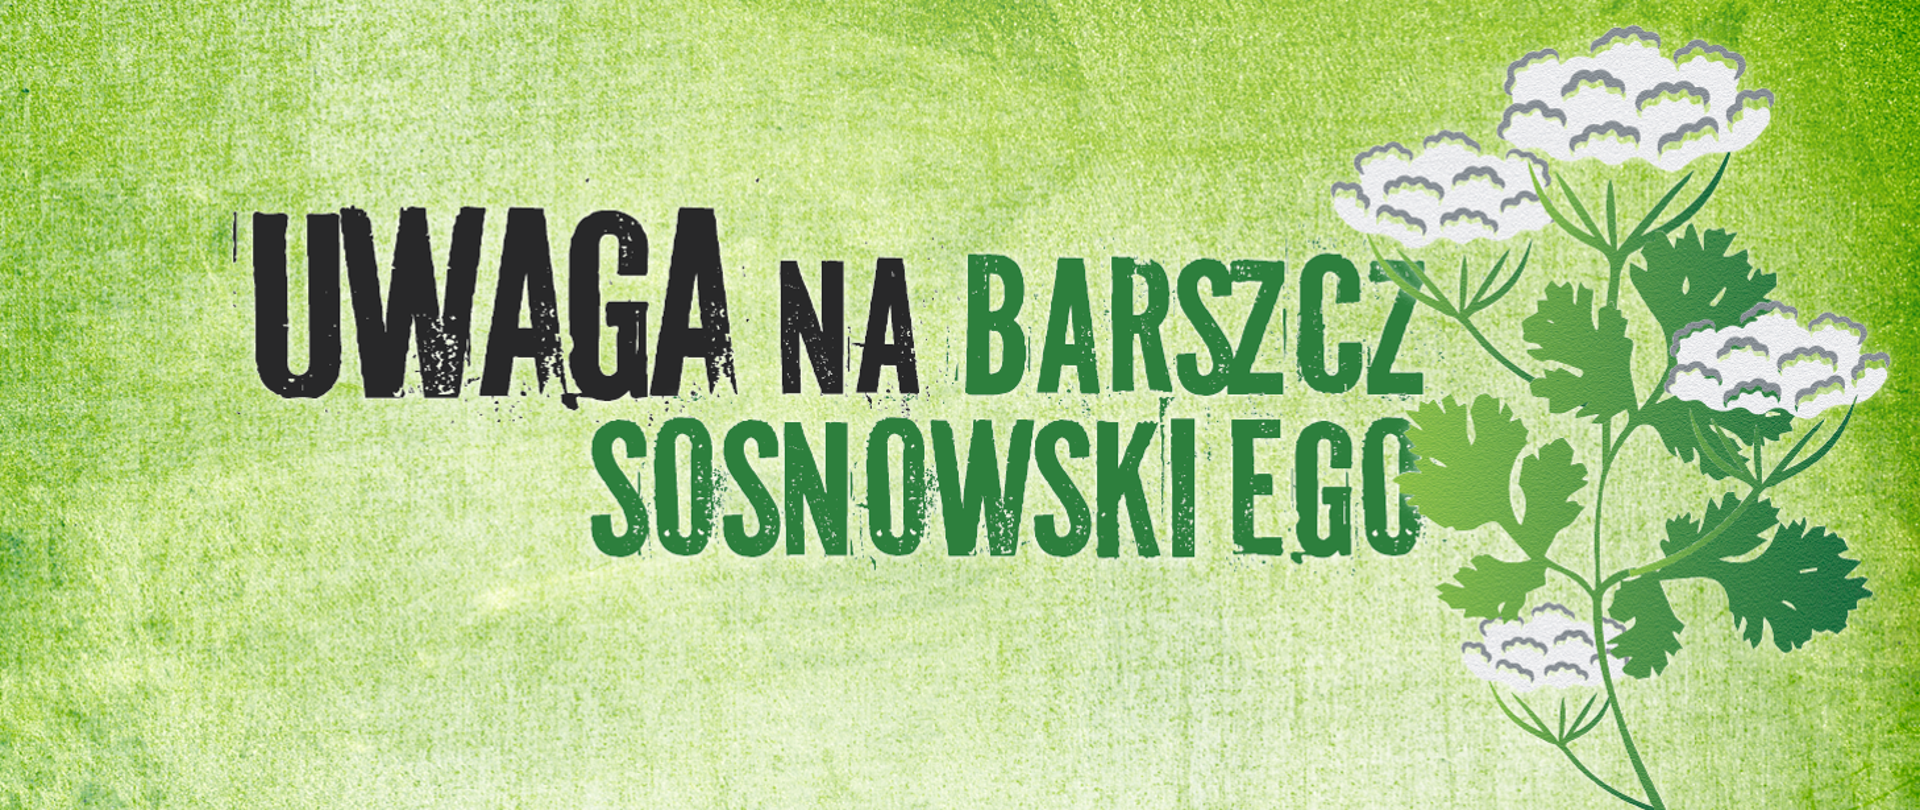 grafika na zielonym tle z rysunkiem barszczu sosnowskiego i napisem ostrzegającym